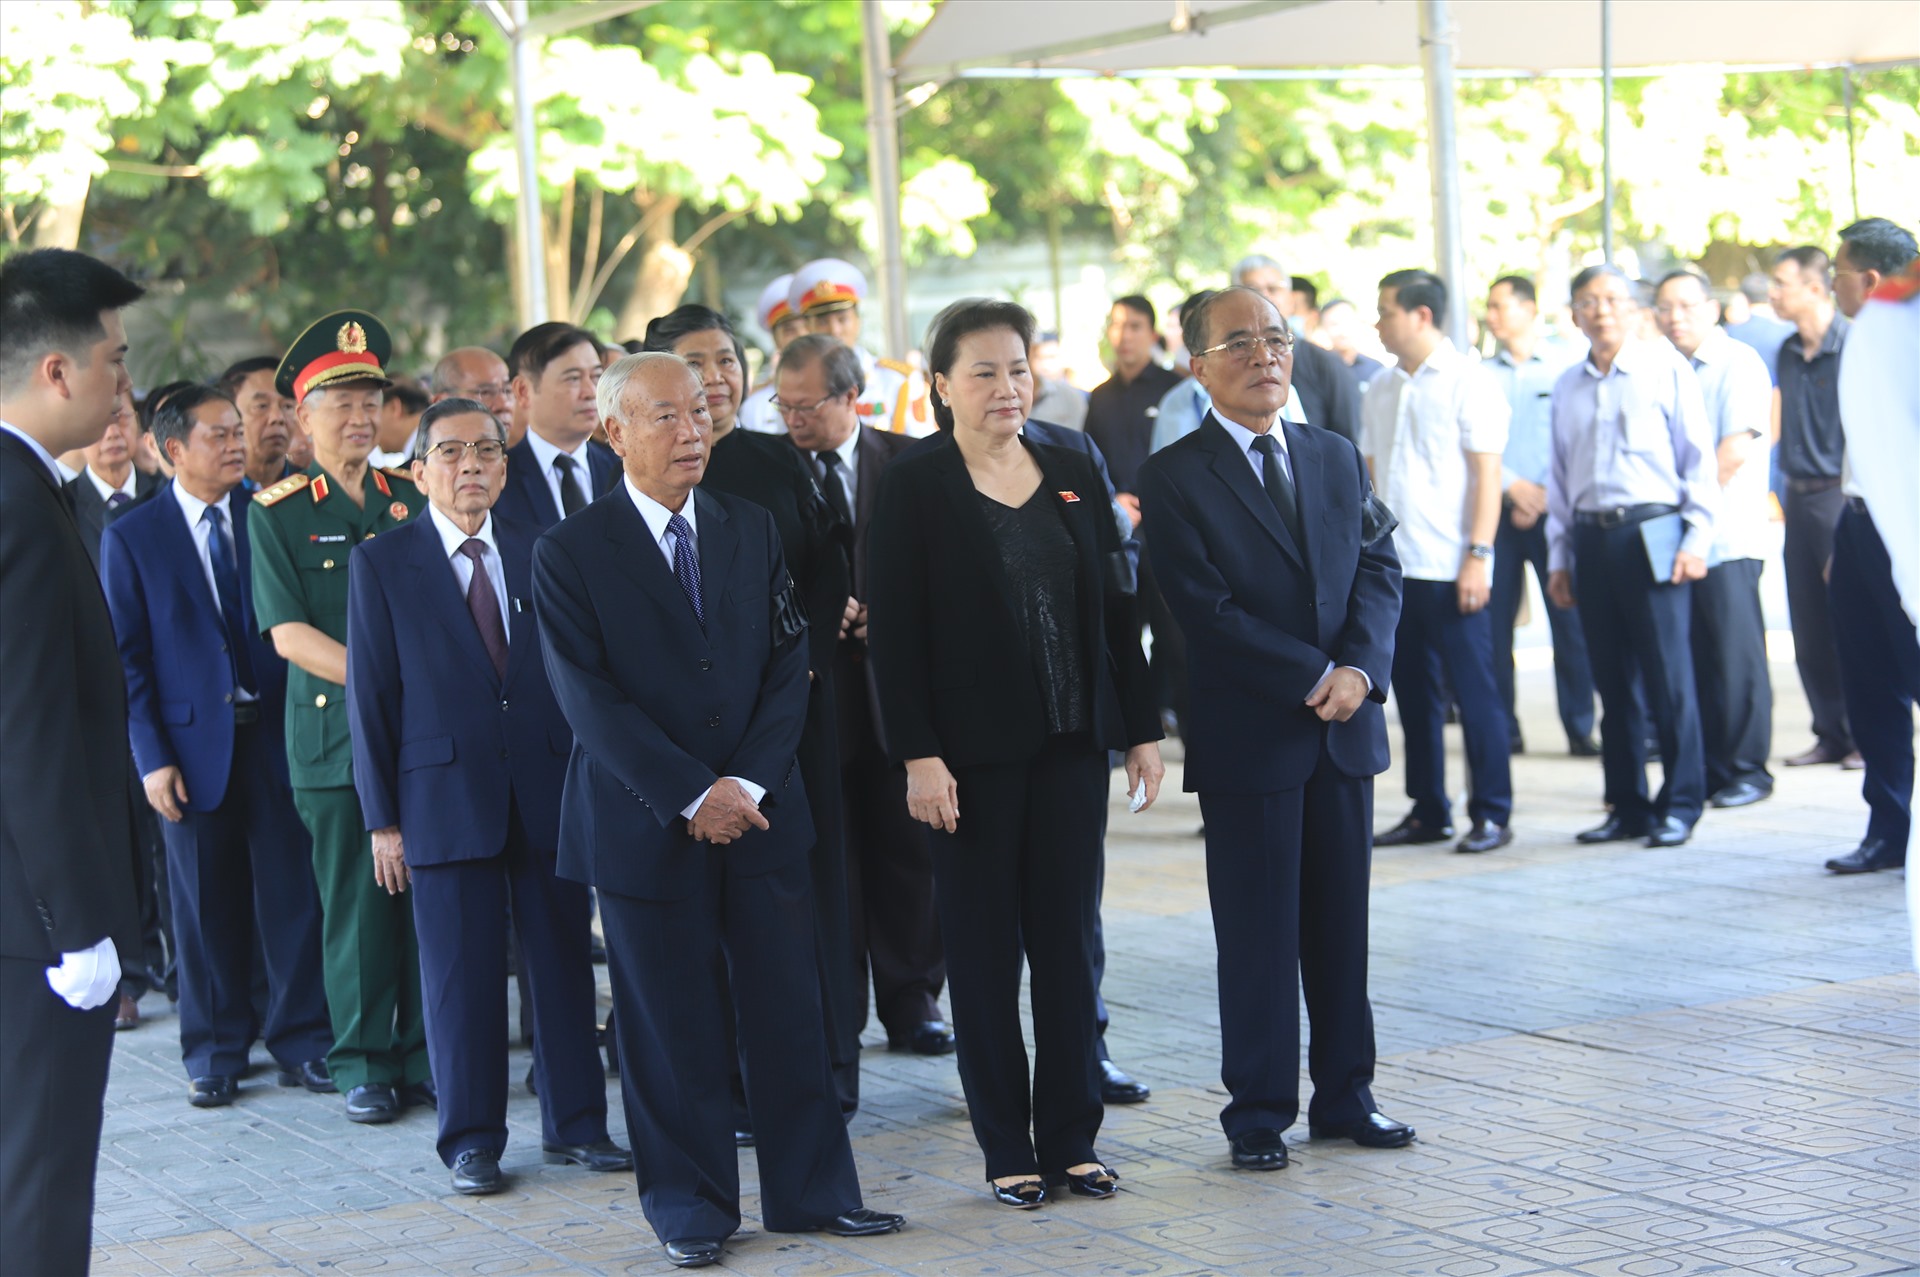 Đoàn Ủy ban thường vụ Quốc hội do Ủy viên Bộ Chính trị, Chủ tịch Quốc hội Nguyễn Thị Kim Ngân dẫn đầu vào viếng.